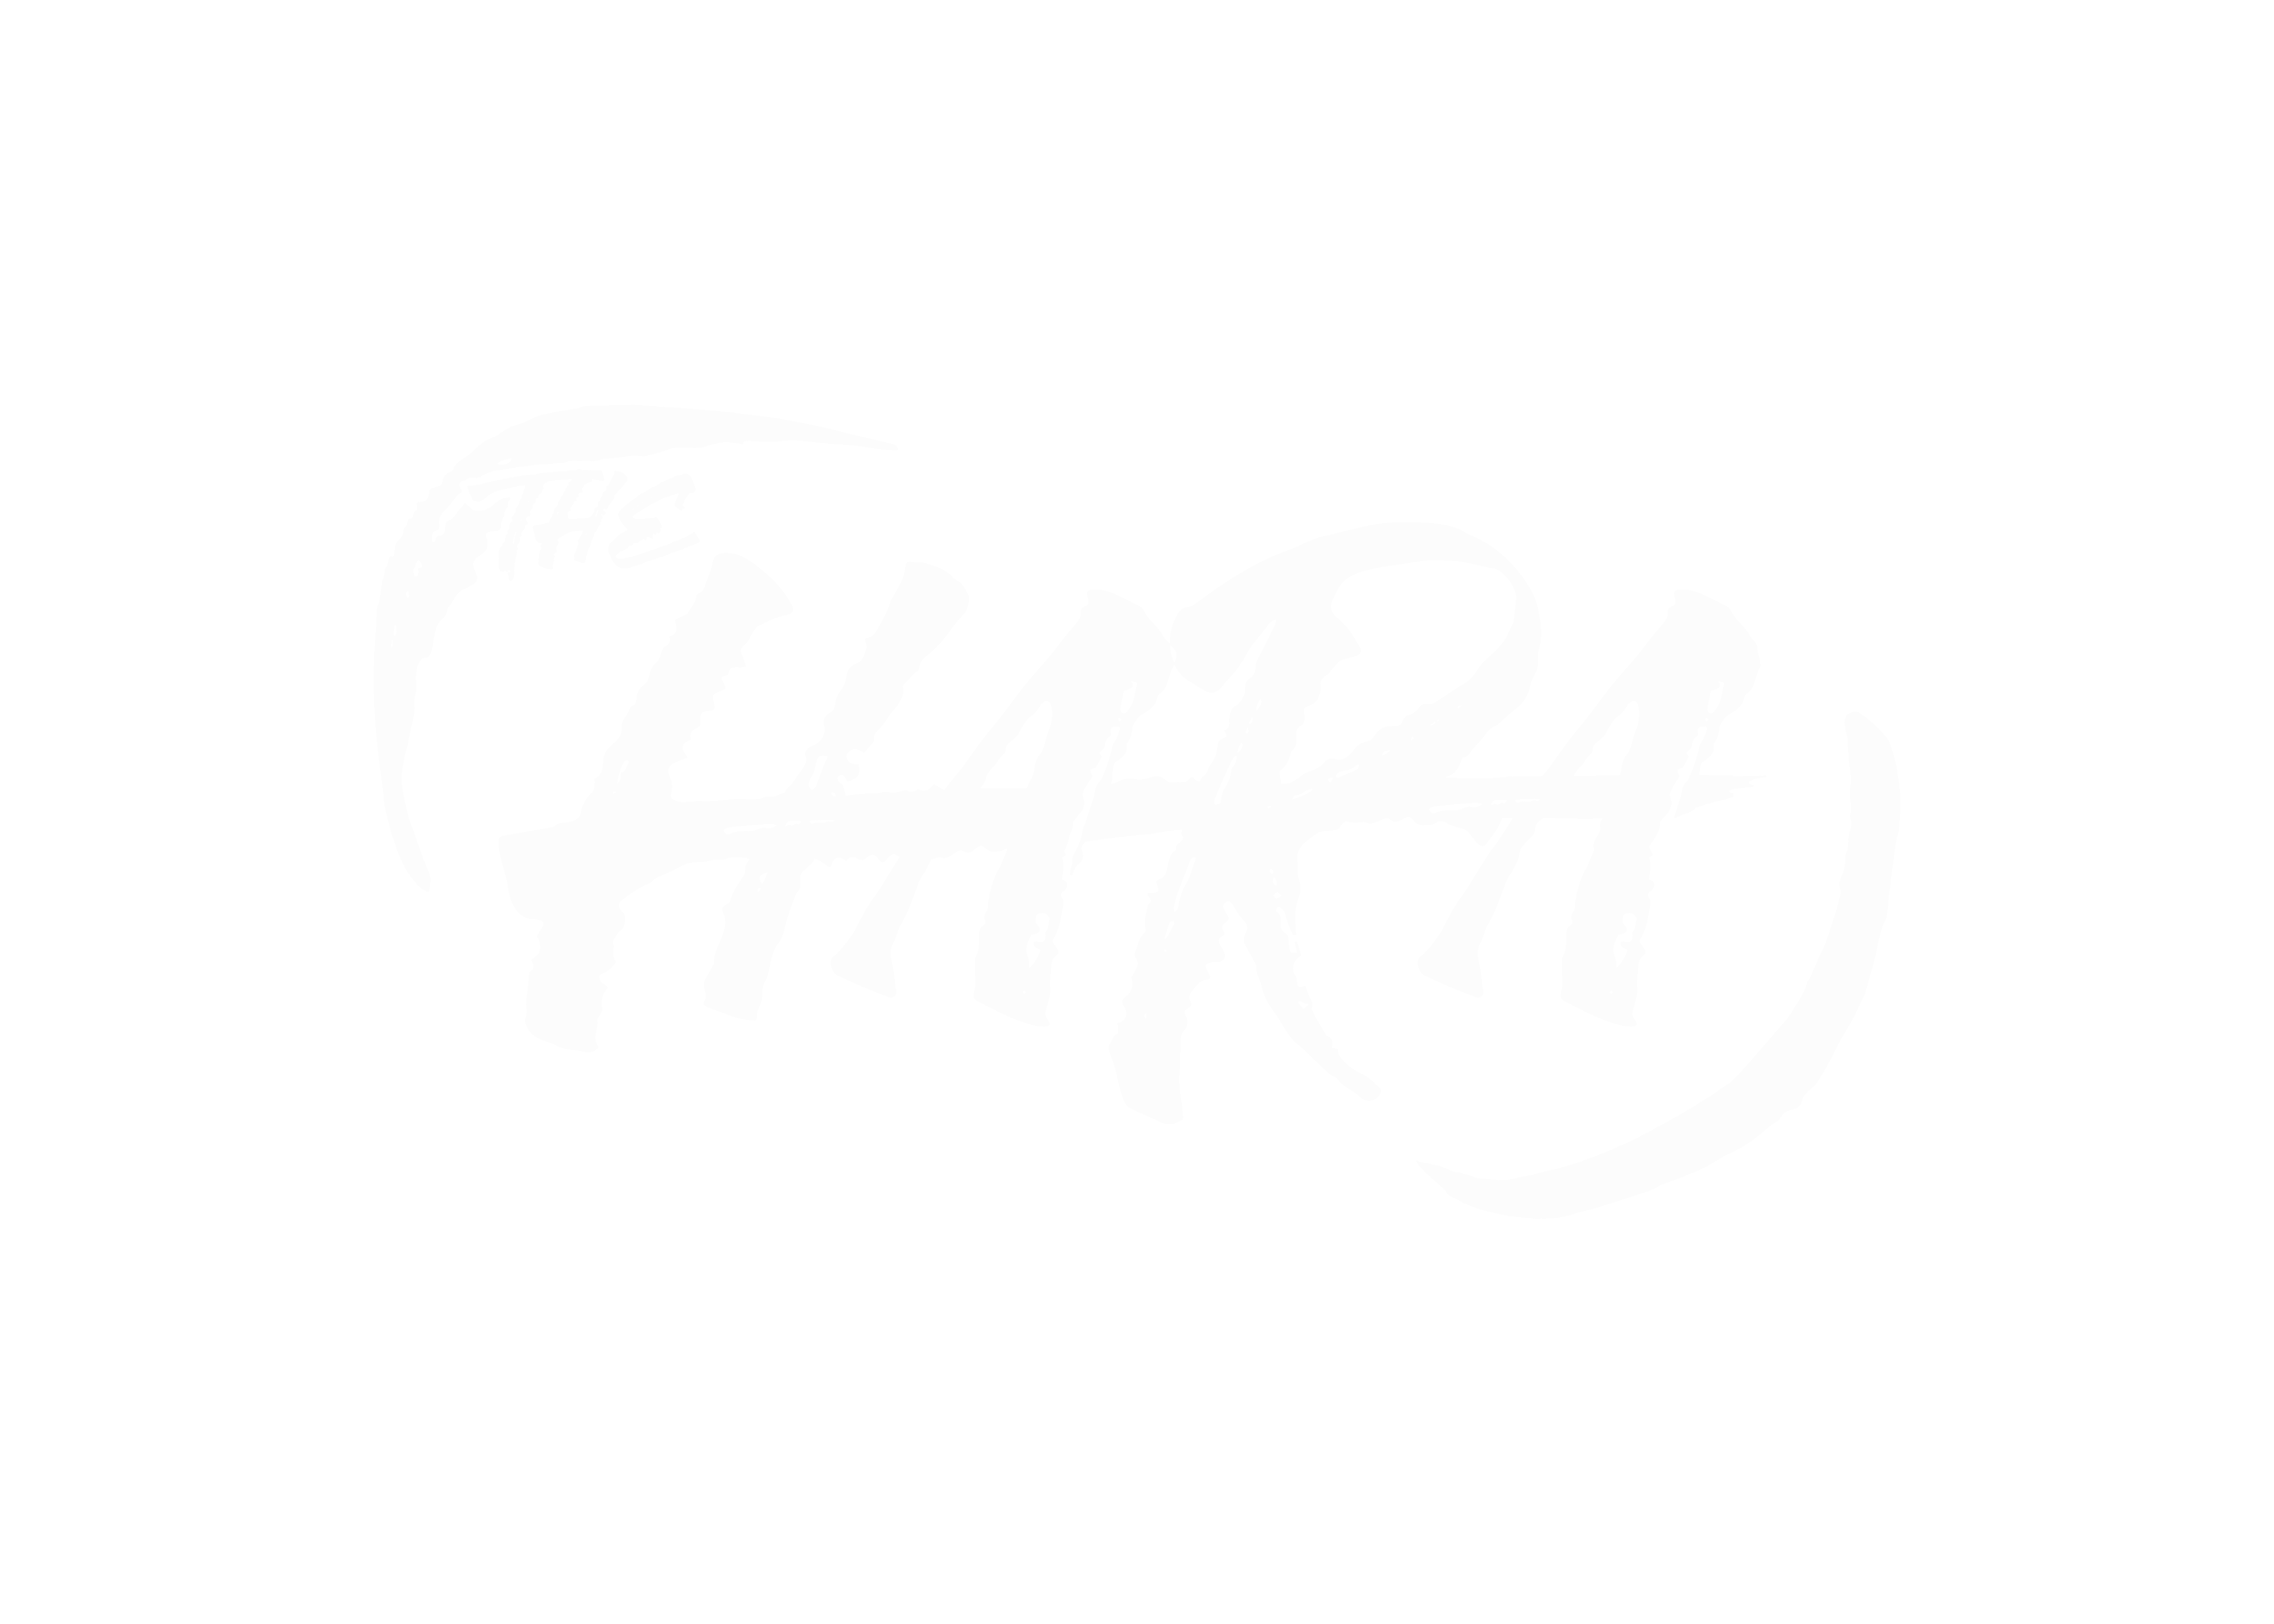 THE HARA